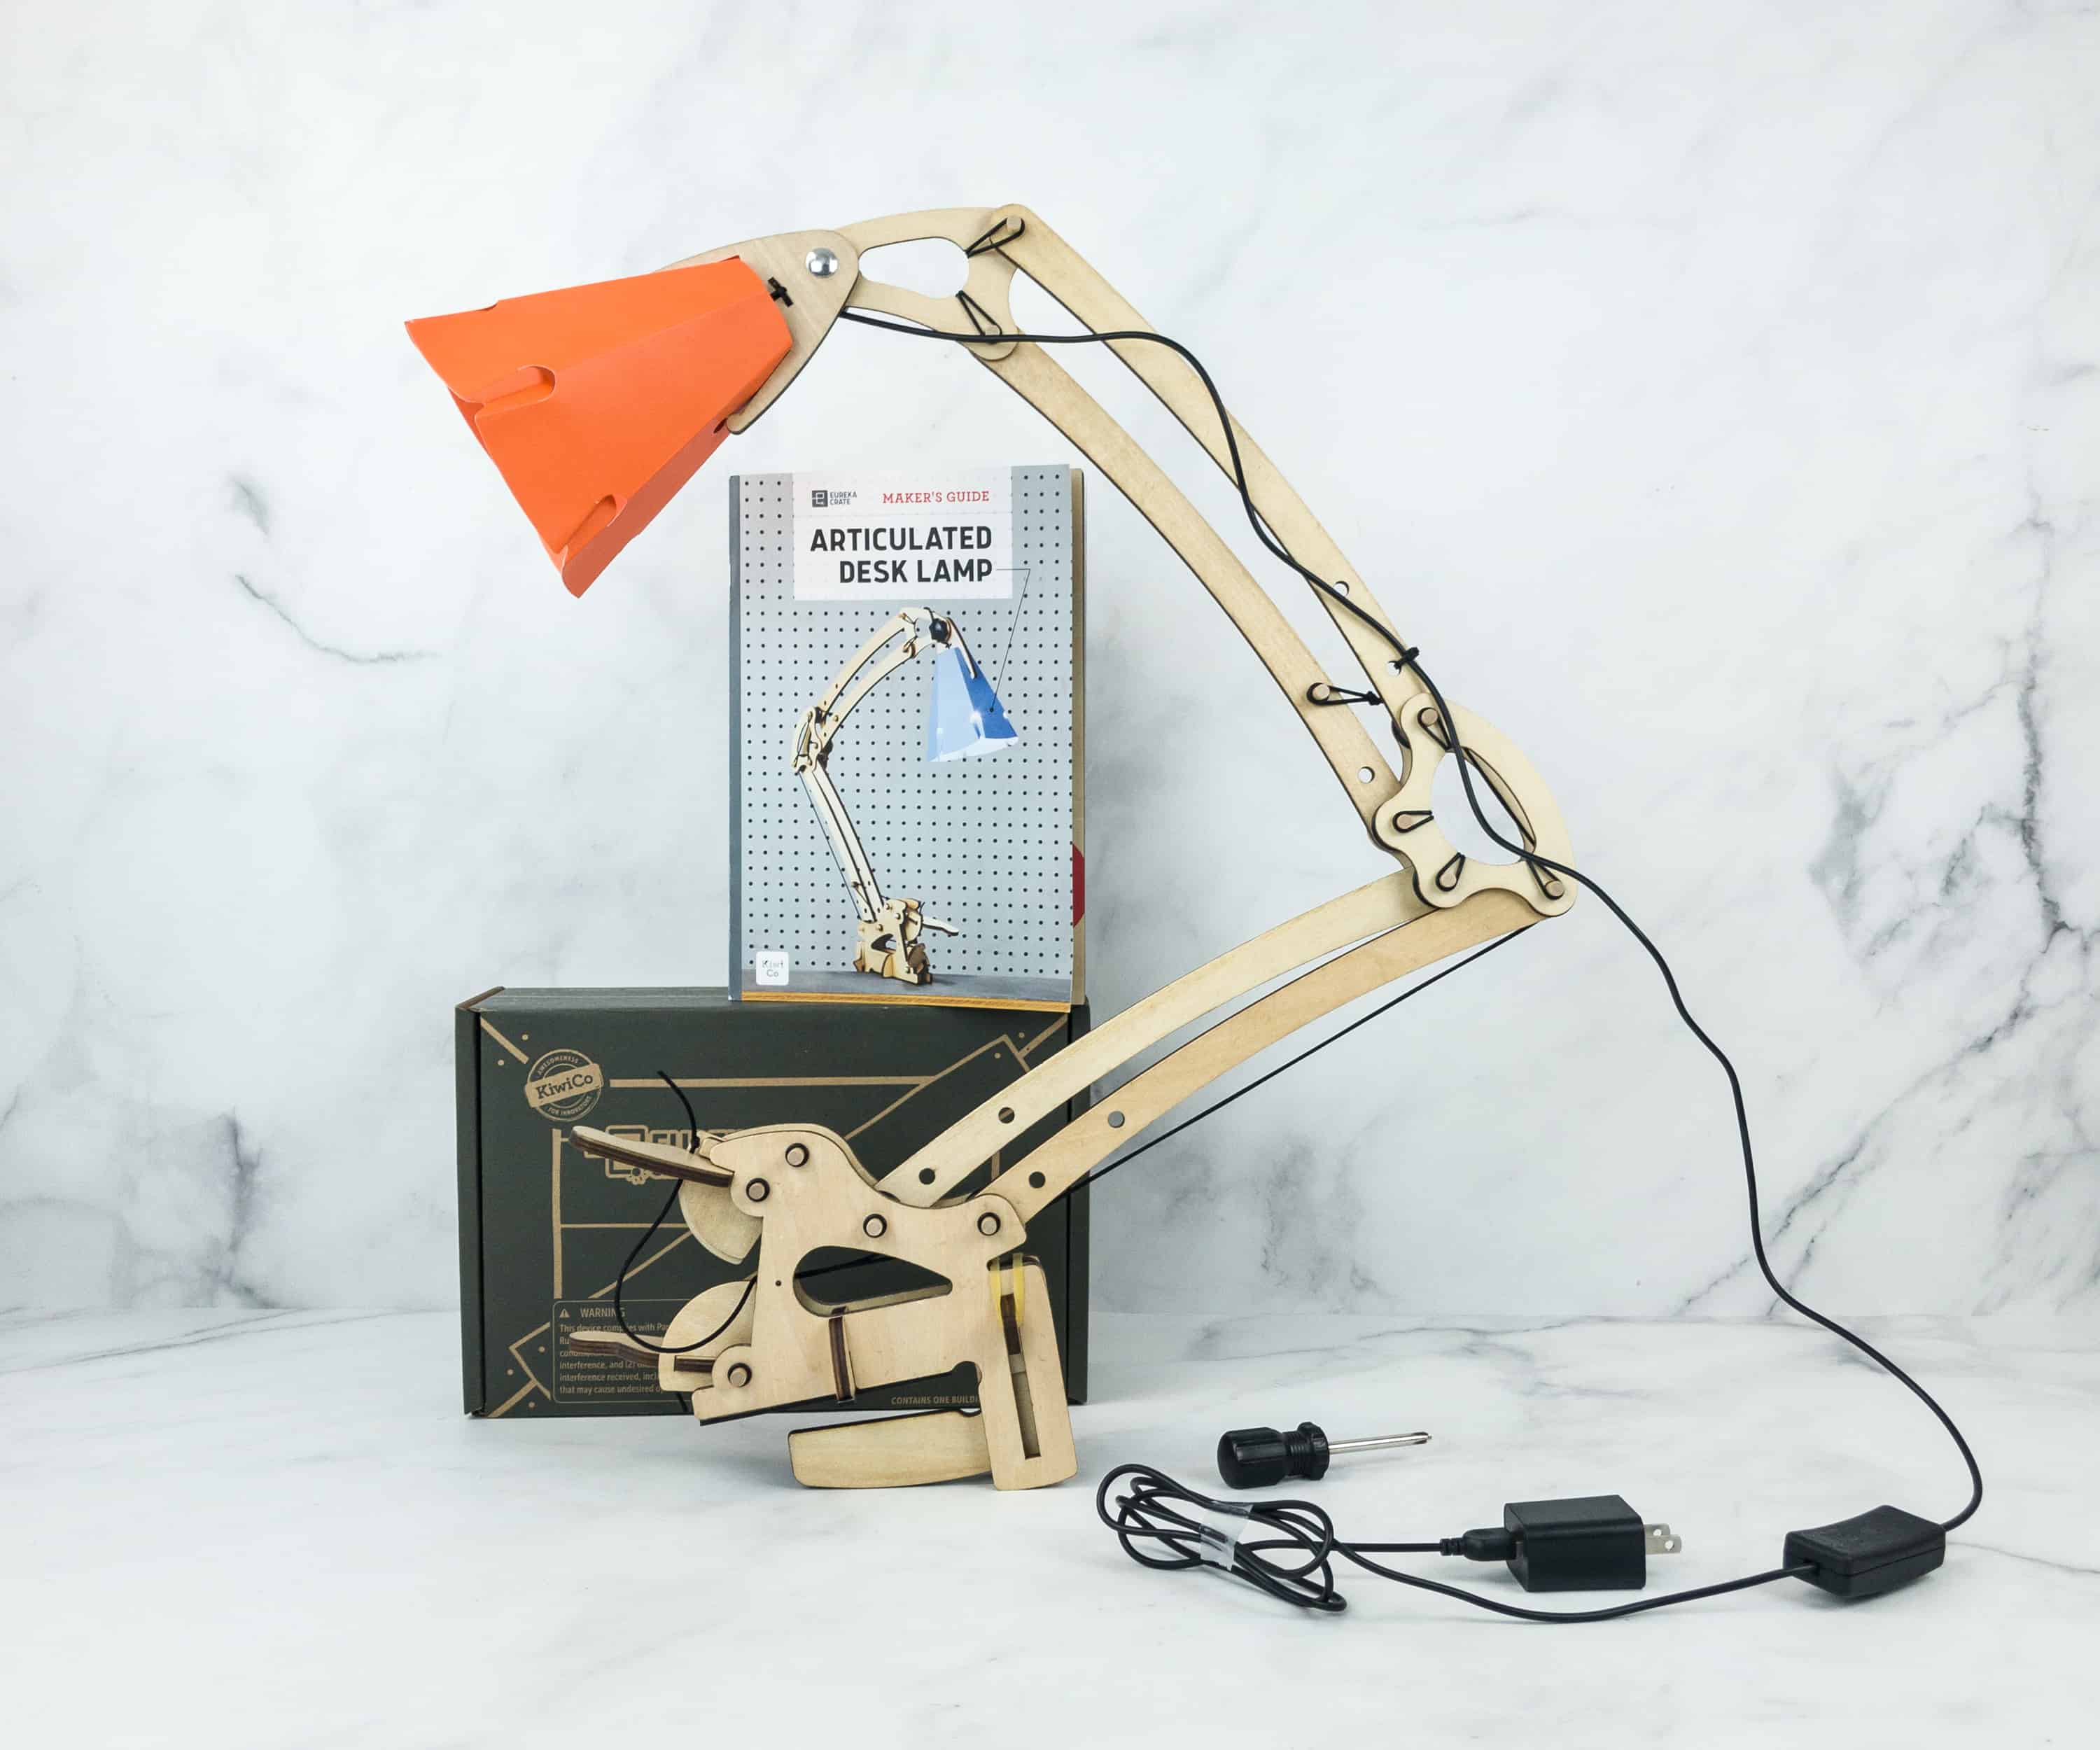 Eureka Crate Review, Articulated Desk Lamp Kiwico